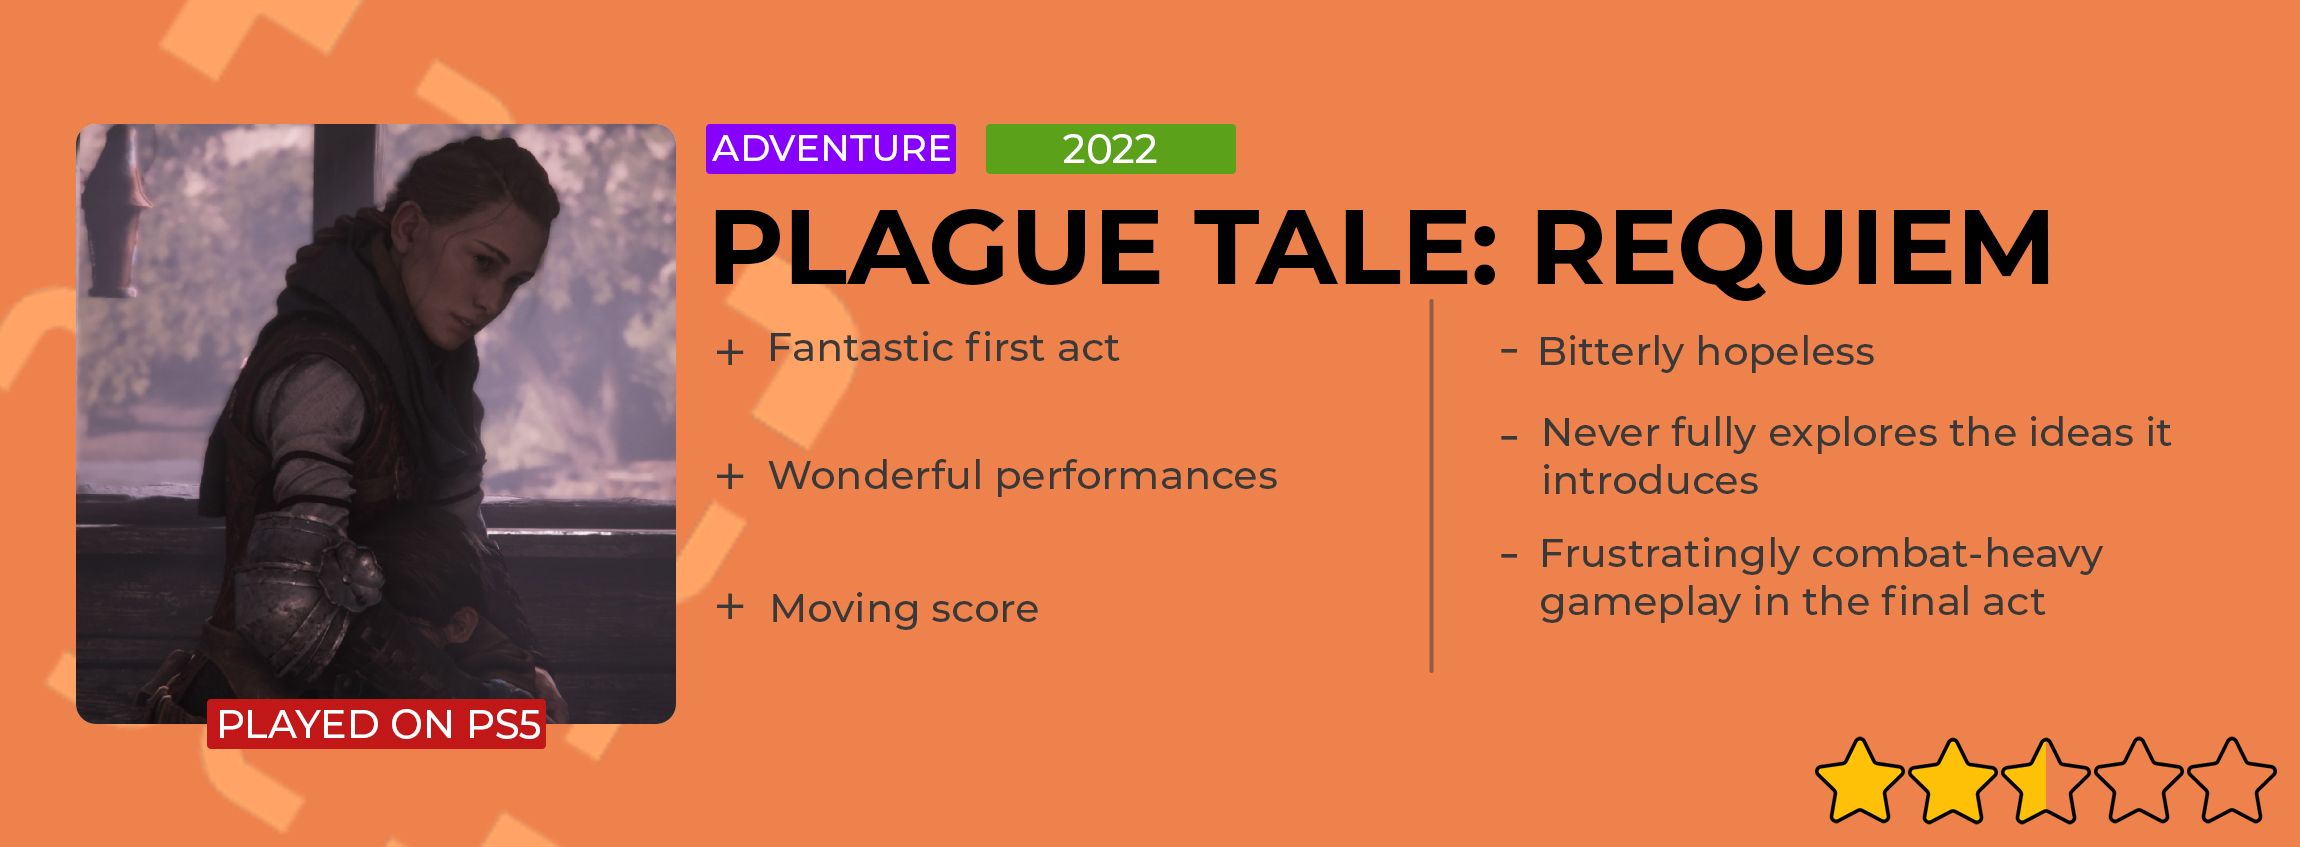 Plague Tale Review Card